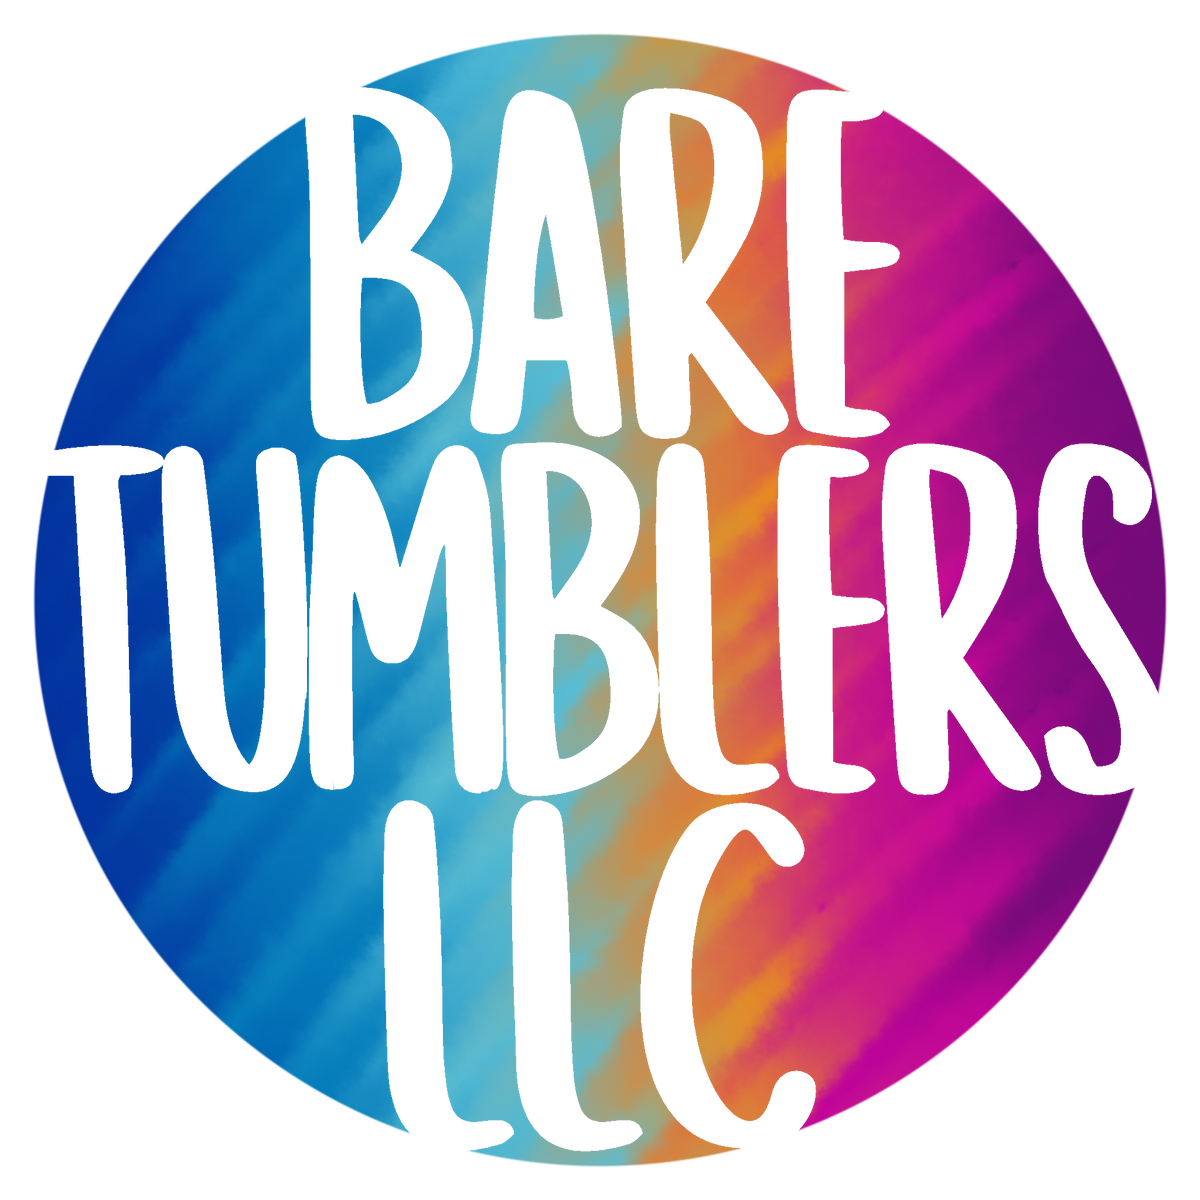 Bare Tumblers LLC